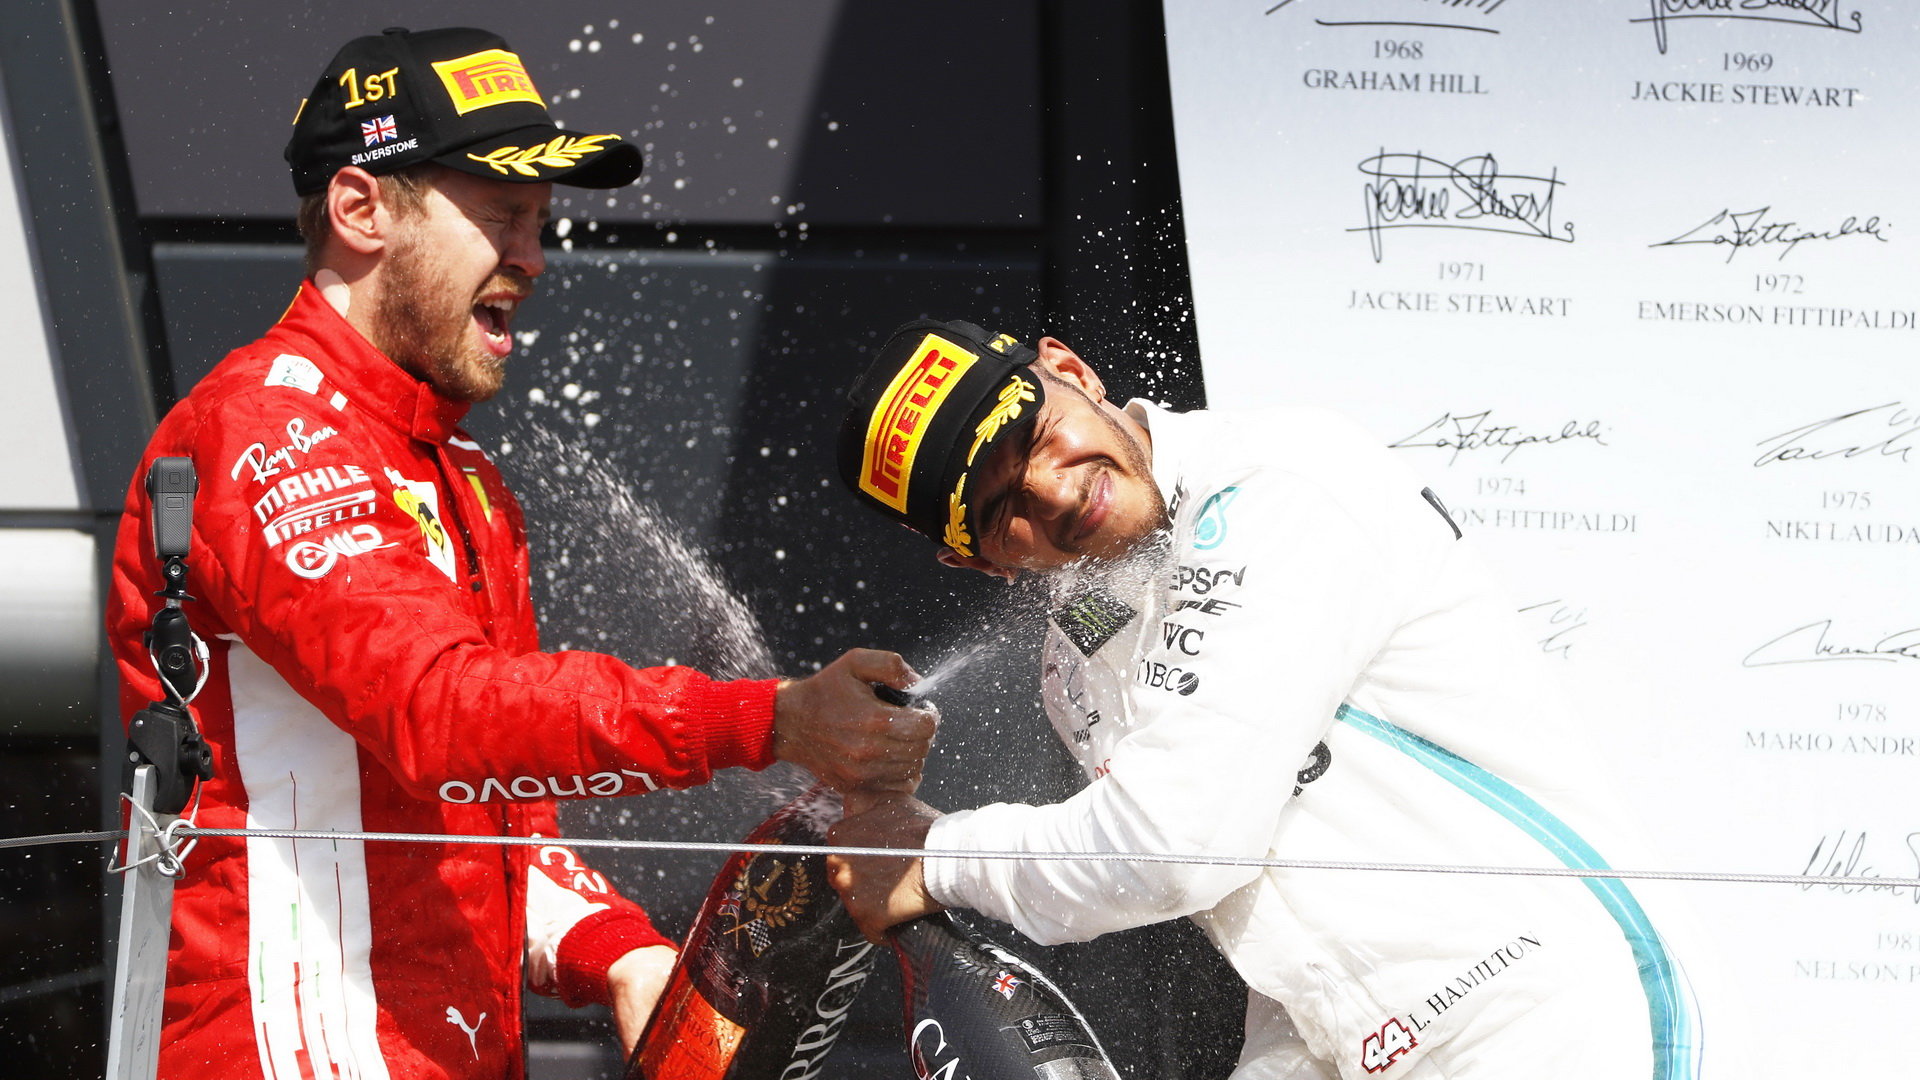 Radost na pódiu - Vettel v Silverstone dojel do cíle před Hamiltonem s náskokem pouhých dvou vteřin